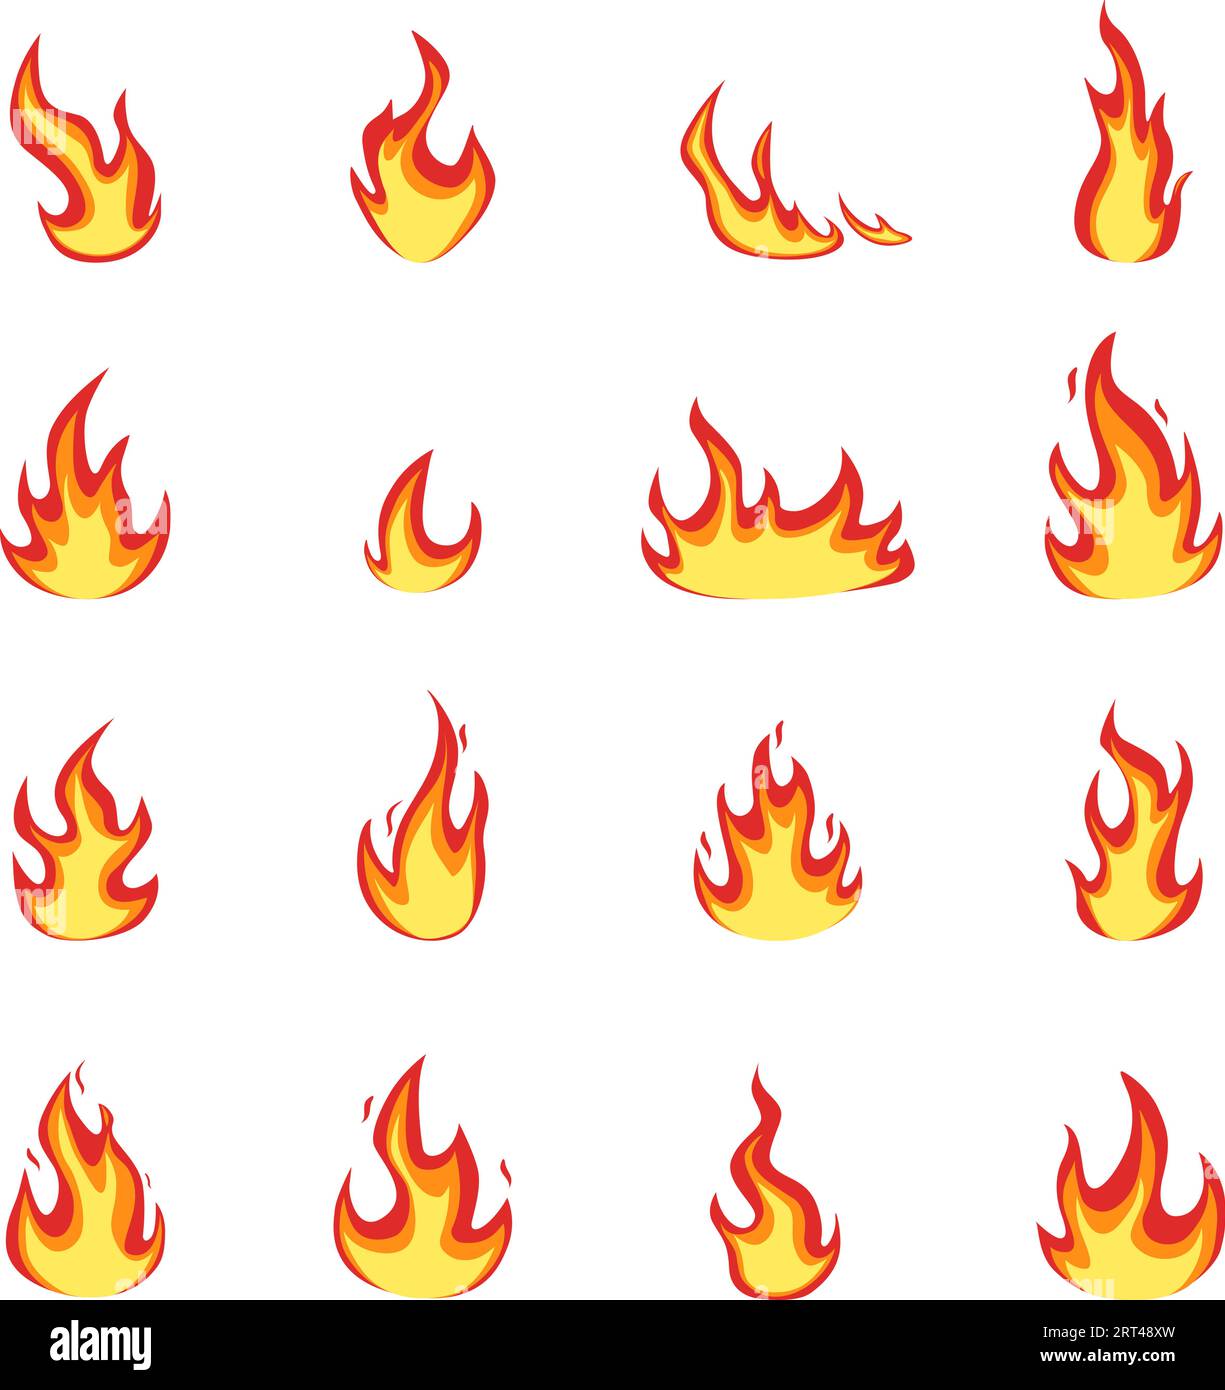 Definir Chama De Fogo De Desenho Animado Blaze De Desenho Vermelho Textura  Energética Silhueta De Incêndio Sobre Fundo Isolado De Ilustração Stock -  Ilustração de textura, alaranjado: 169030025